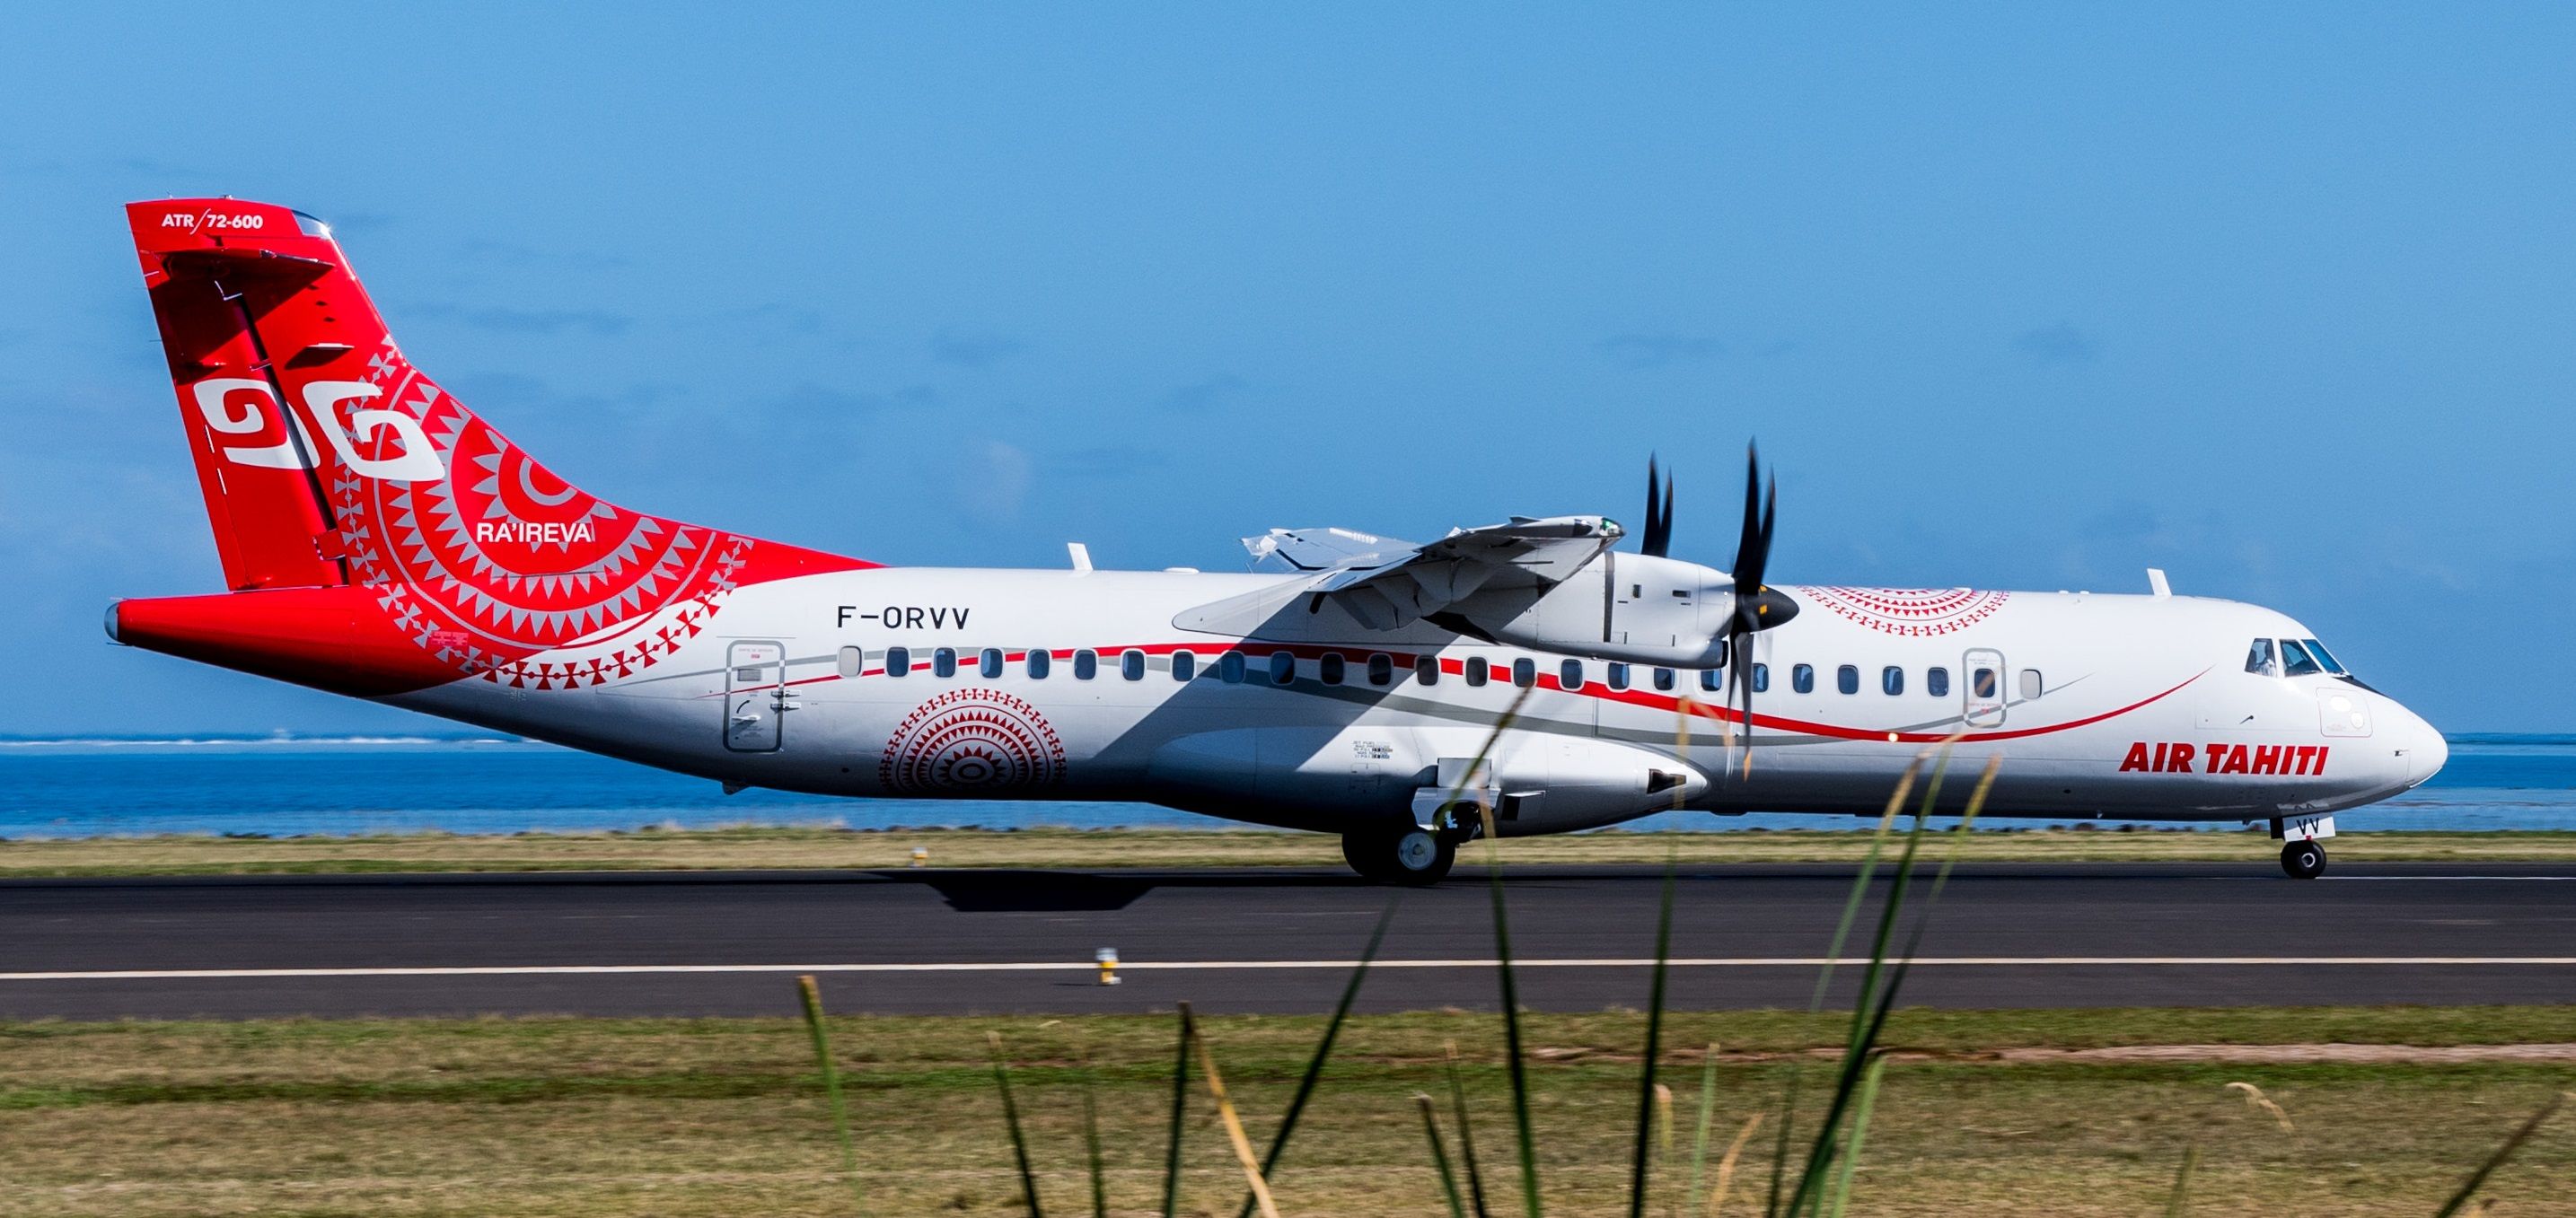 Air Tahiti ATR 72